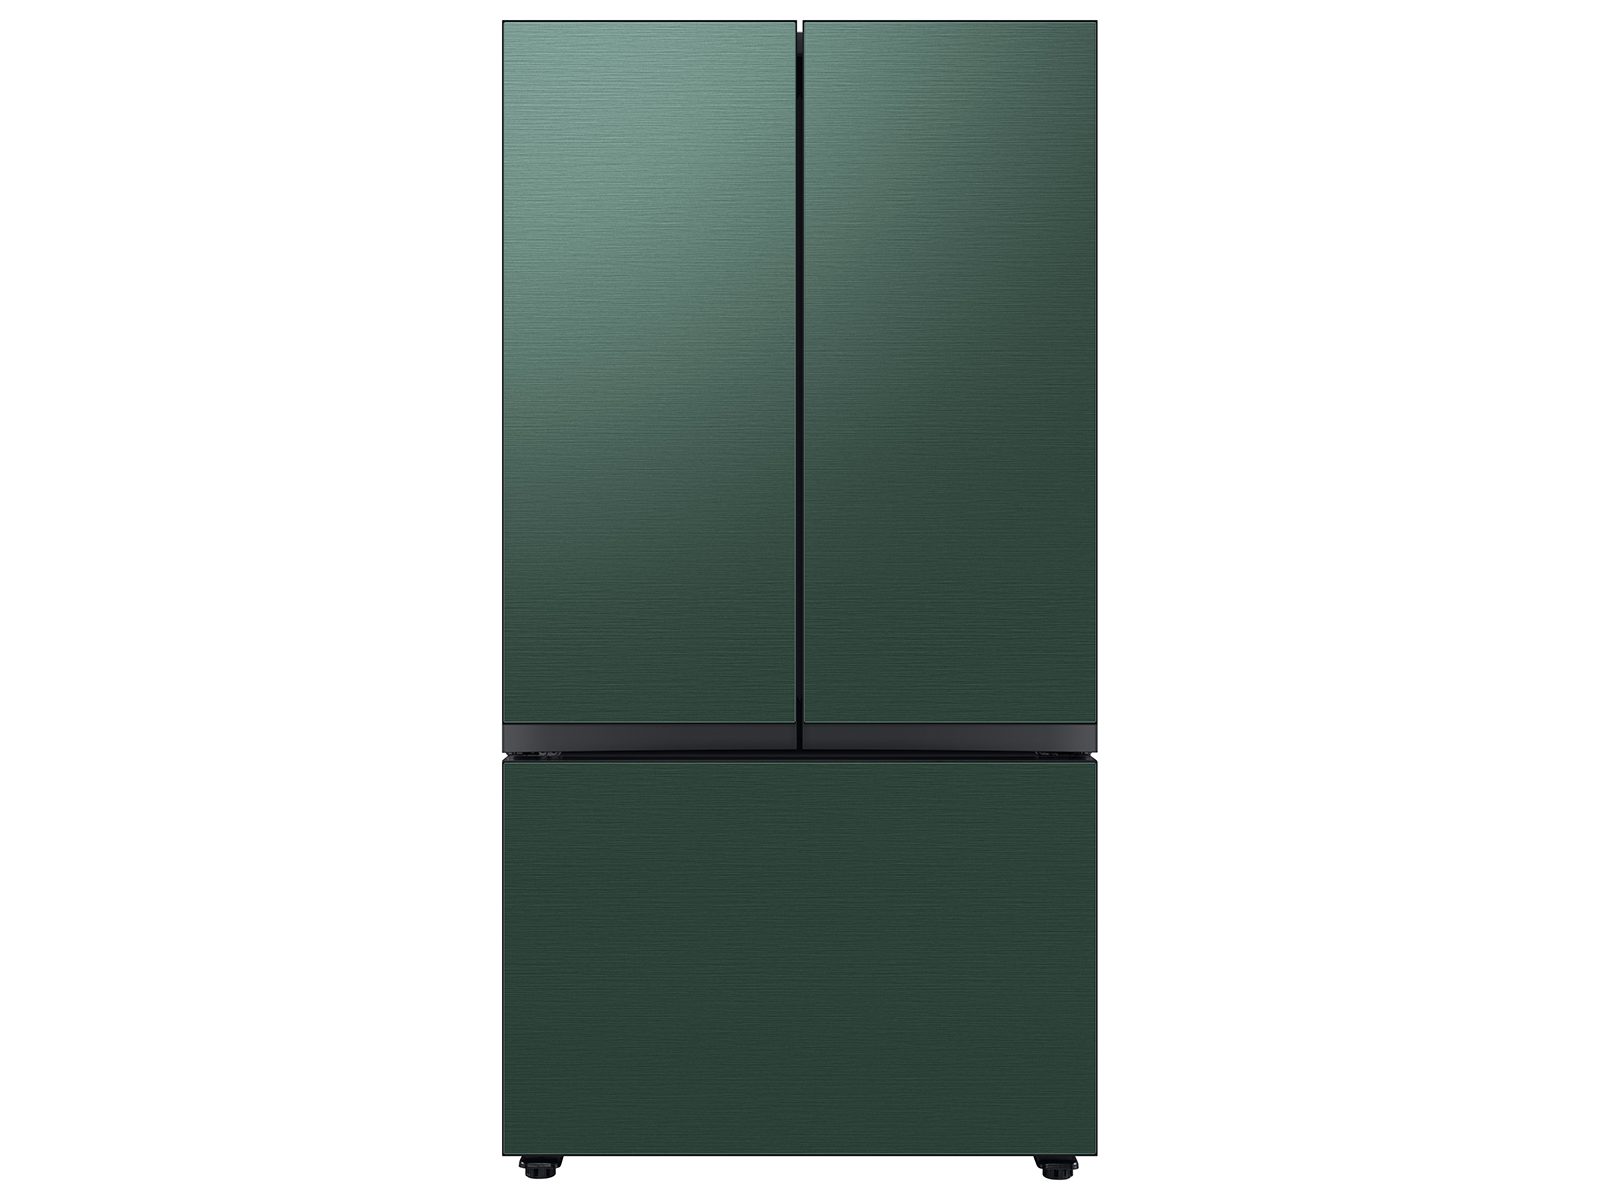 Bespoke 3-Door French Door Refrigerator (24 cu. ft.) with Beverage Center™ in Emerald Green Steel